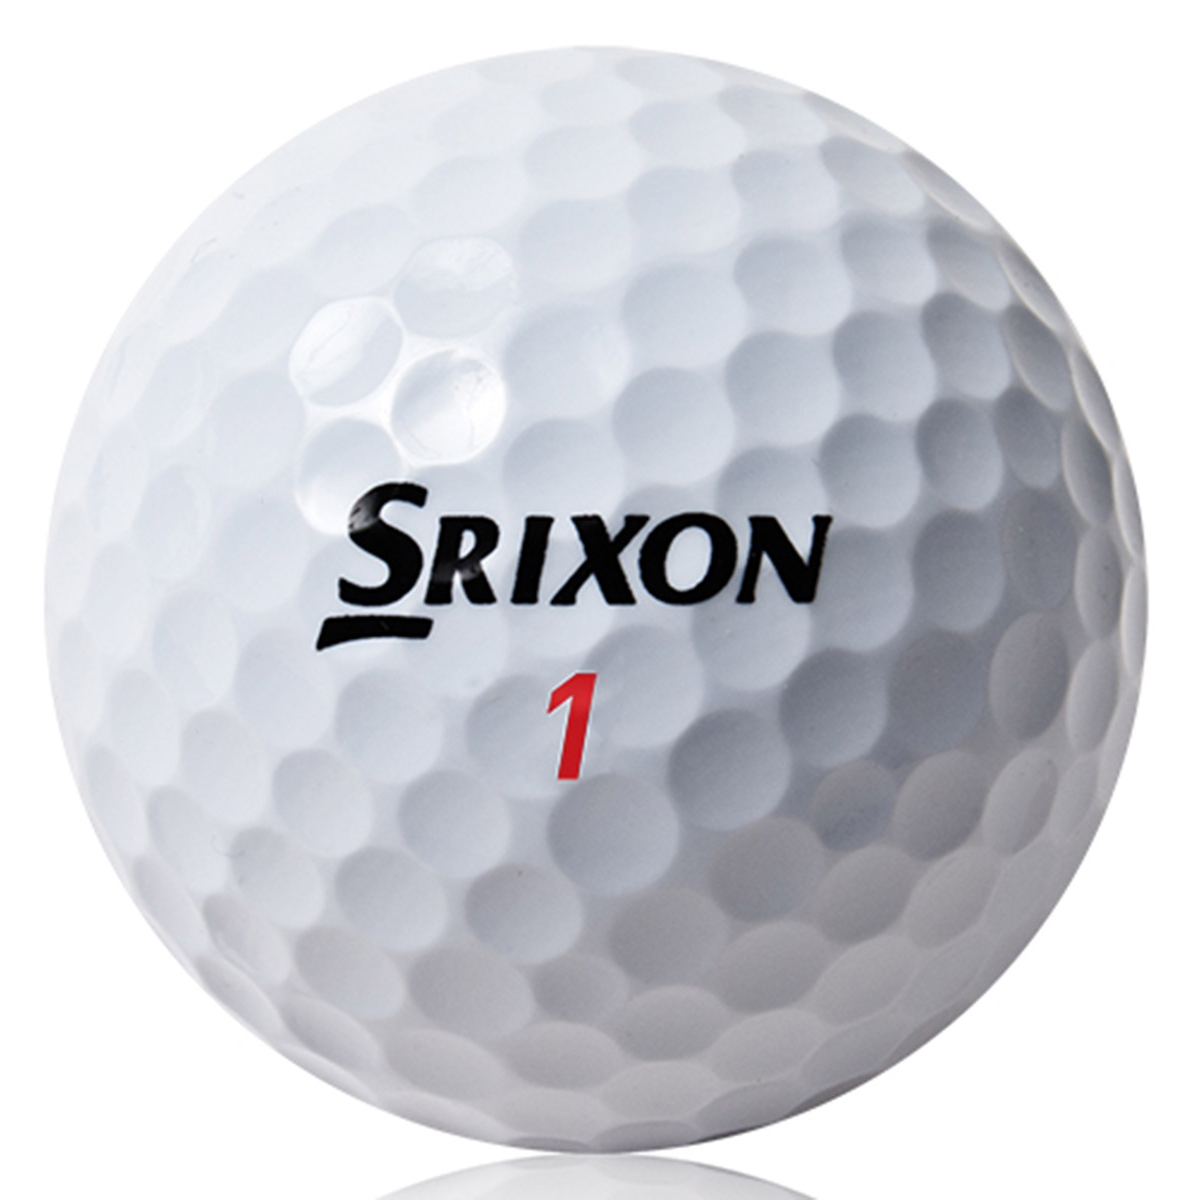 Srixon Distance 12 Golf Balls - Online Golf